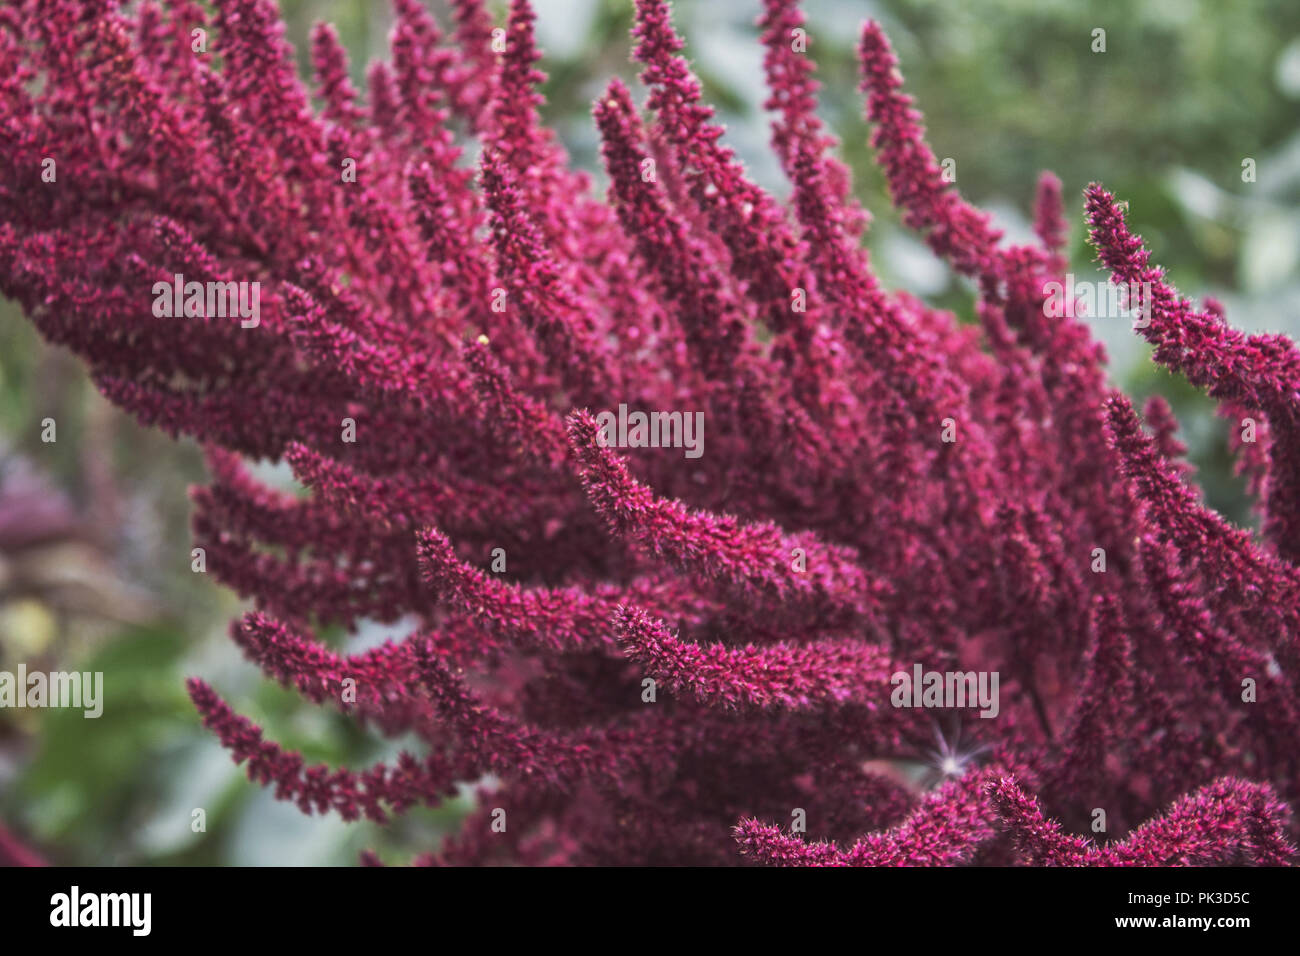 Ornamentali infiorescenze viola di amaranto. Luminose fluffy blossom. Impianto di viola. Foto Stock